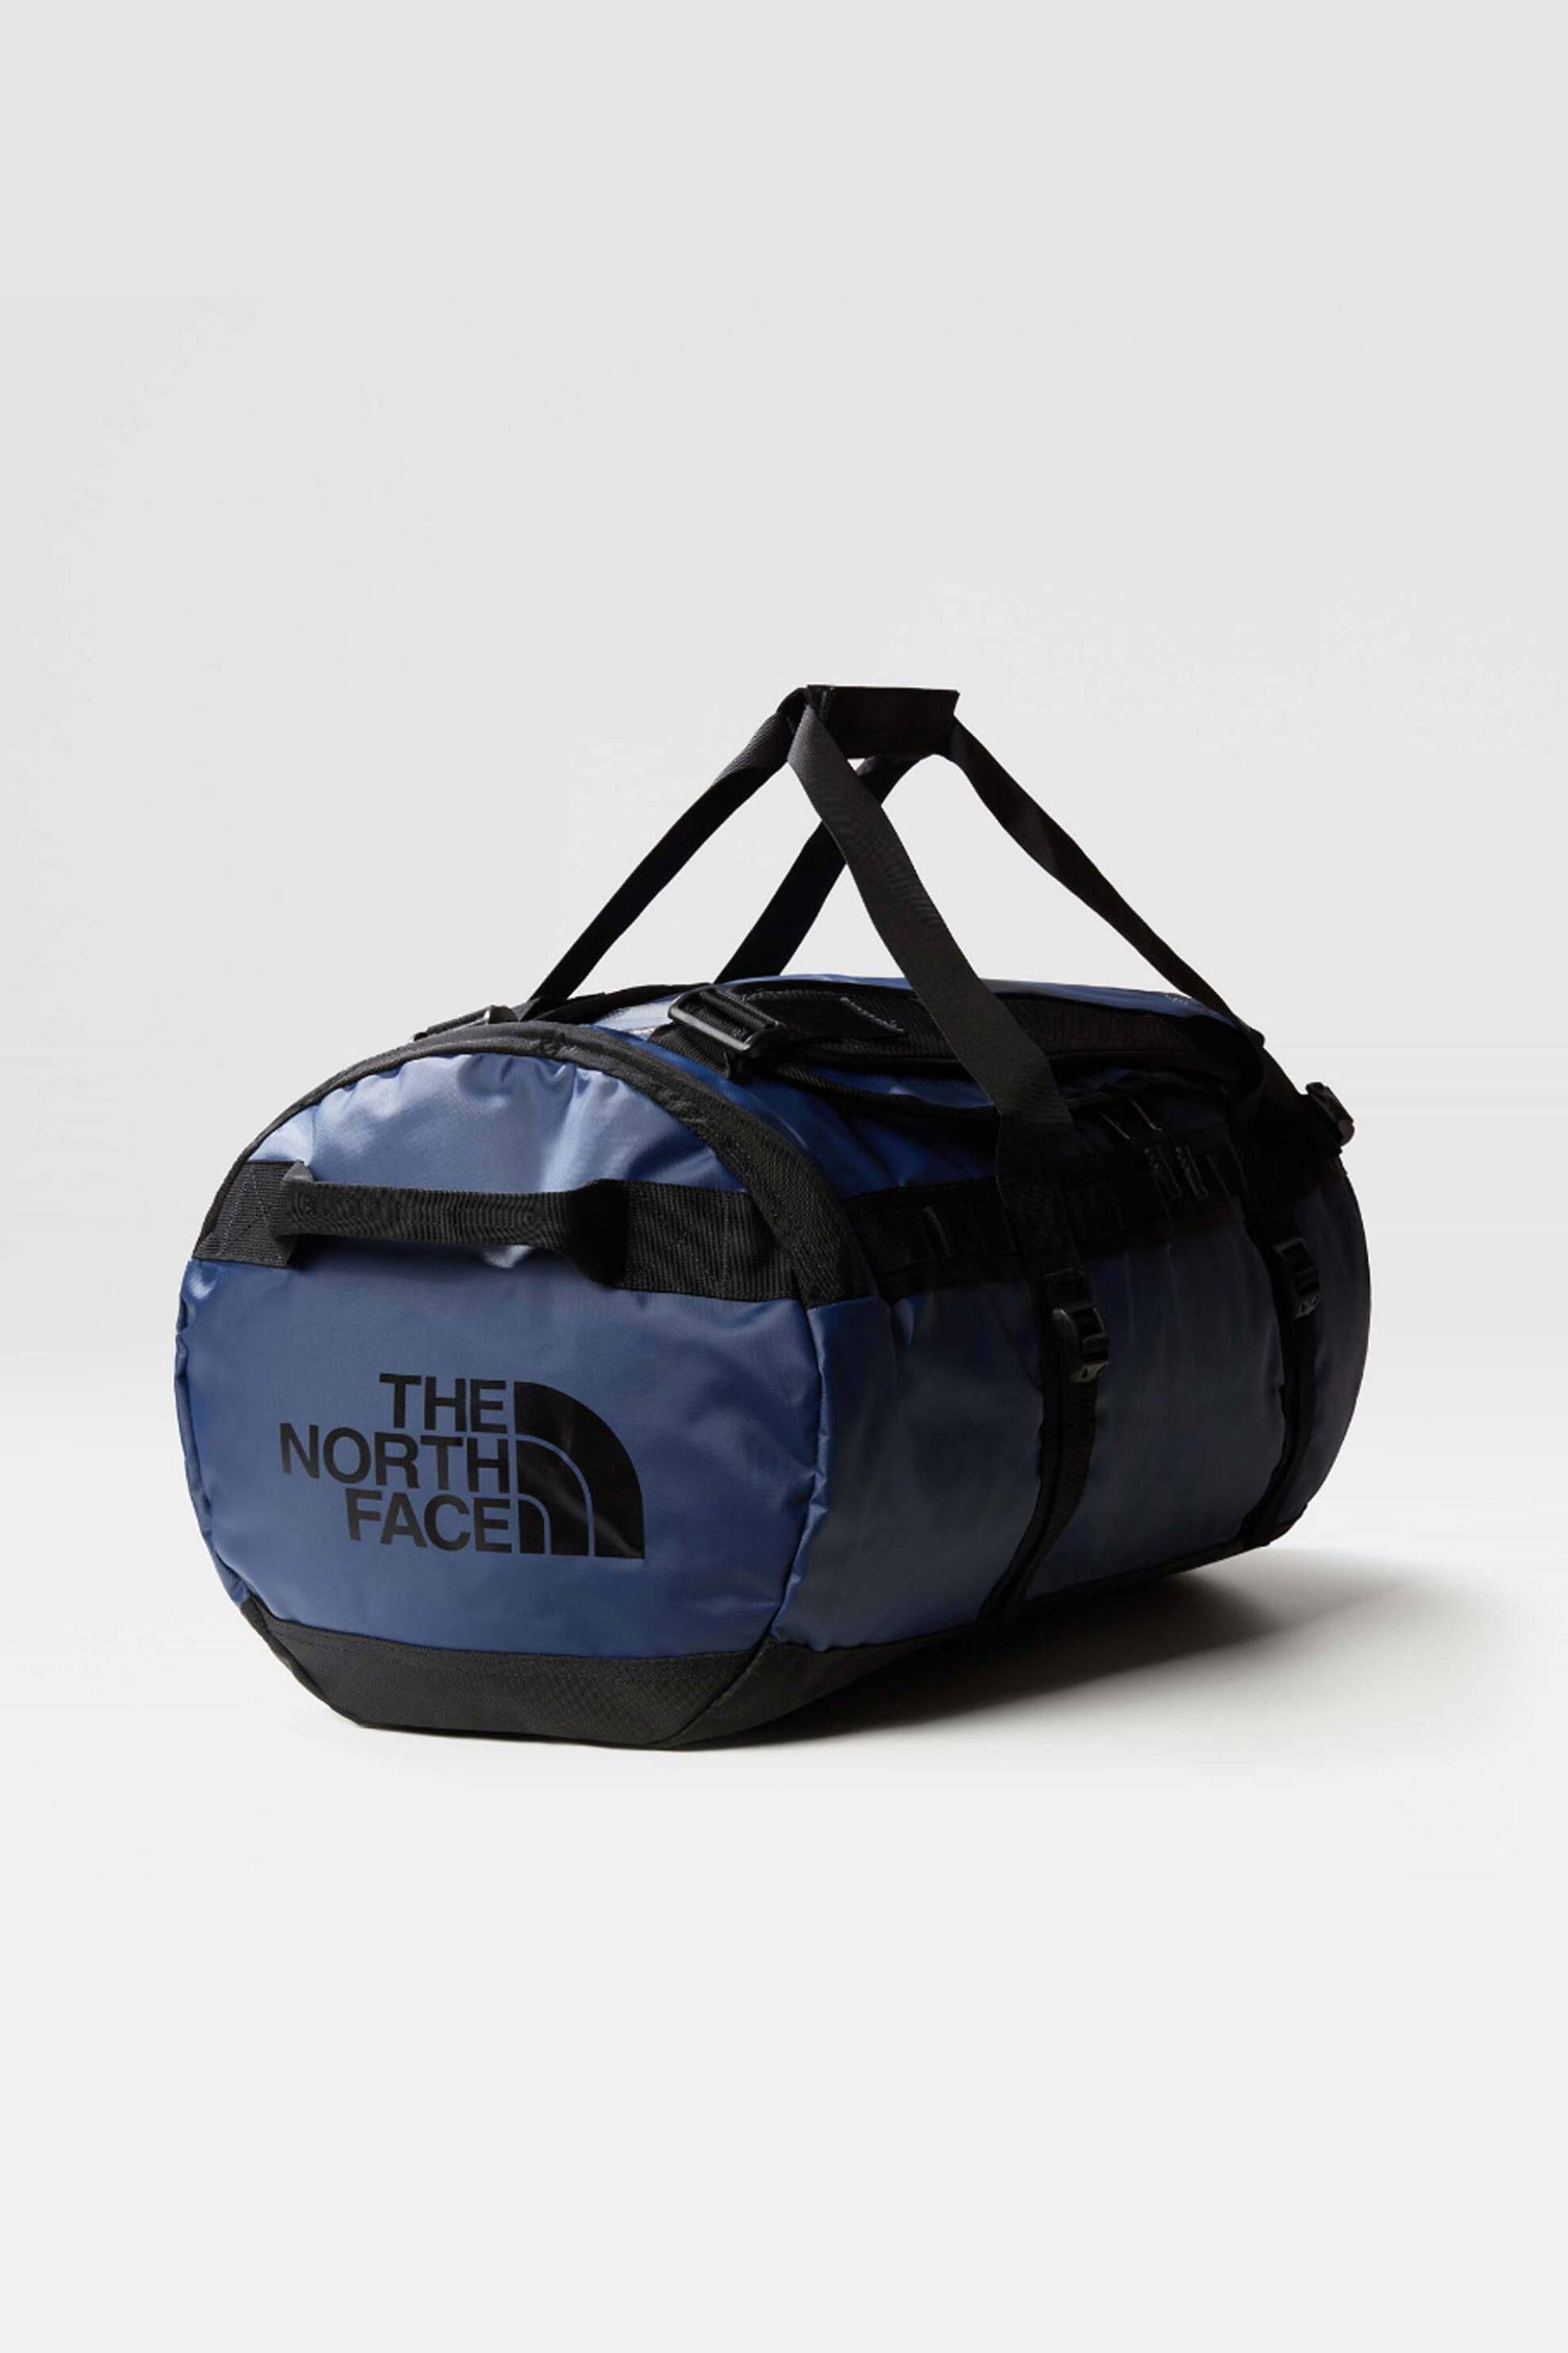 Ανδρική Μόδα > Ανδρικές Τσάντες > Σακ Βουαγιάζ Ανδρικά The North Face unisex σάκος ταξιδίου με logo print "Base Camp Duffel" - NF0A52SA92A1 Μπλε Σκούρο